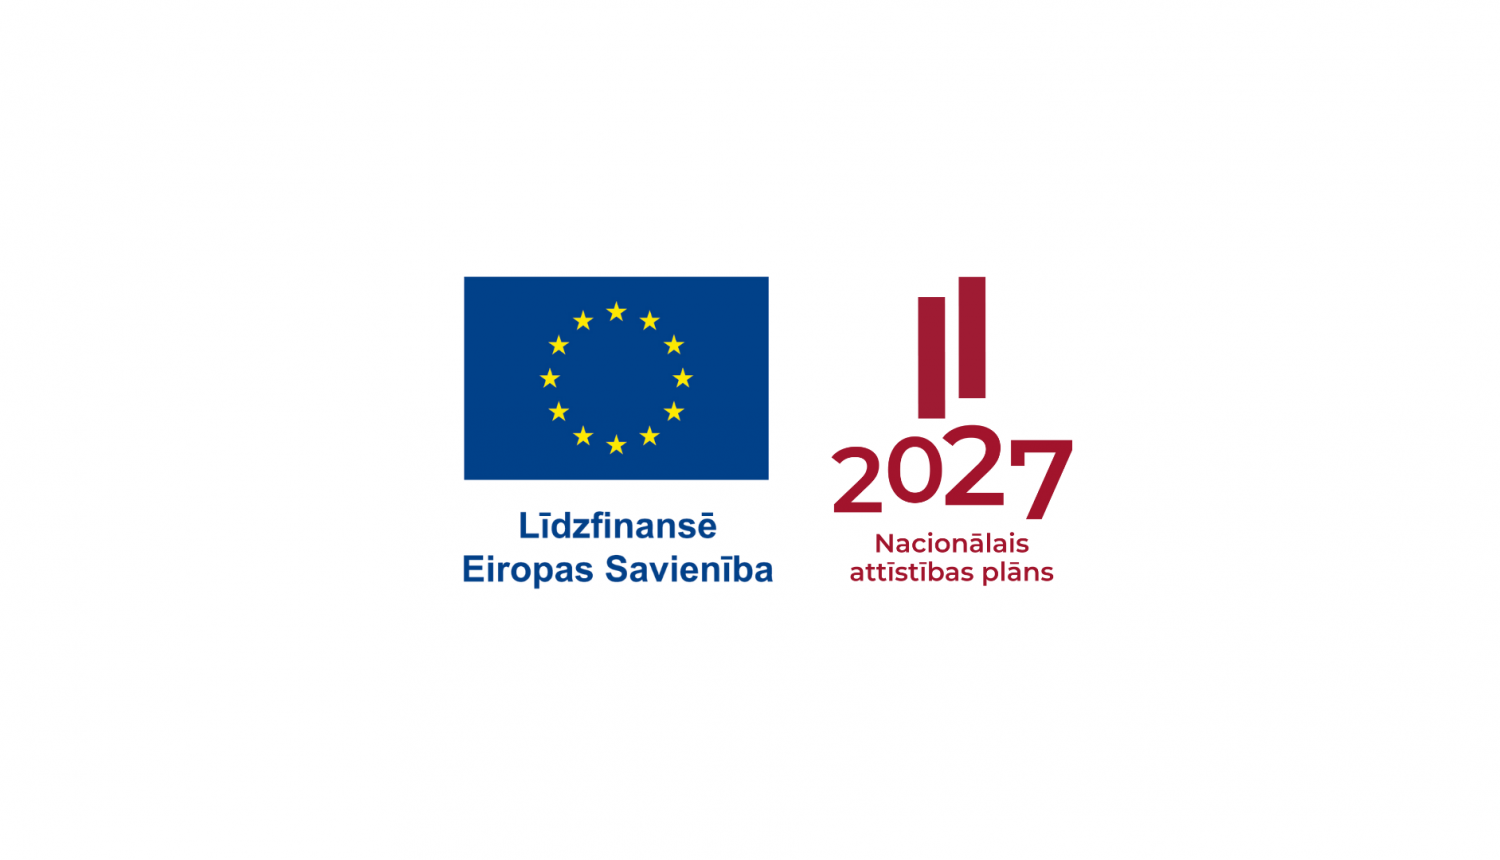 Eiropas Savienība līdzfinansē un Nacionālais attīstības plāns 2027 logo